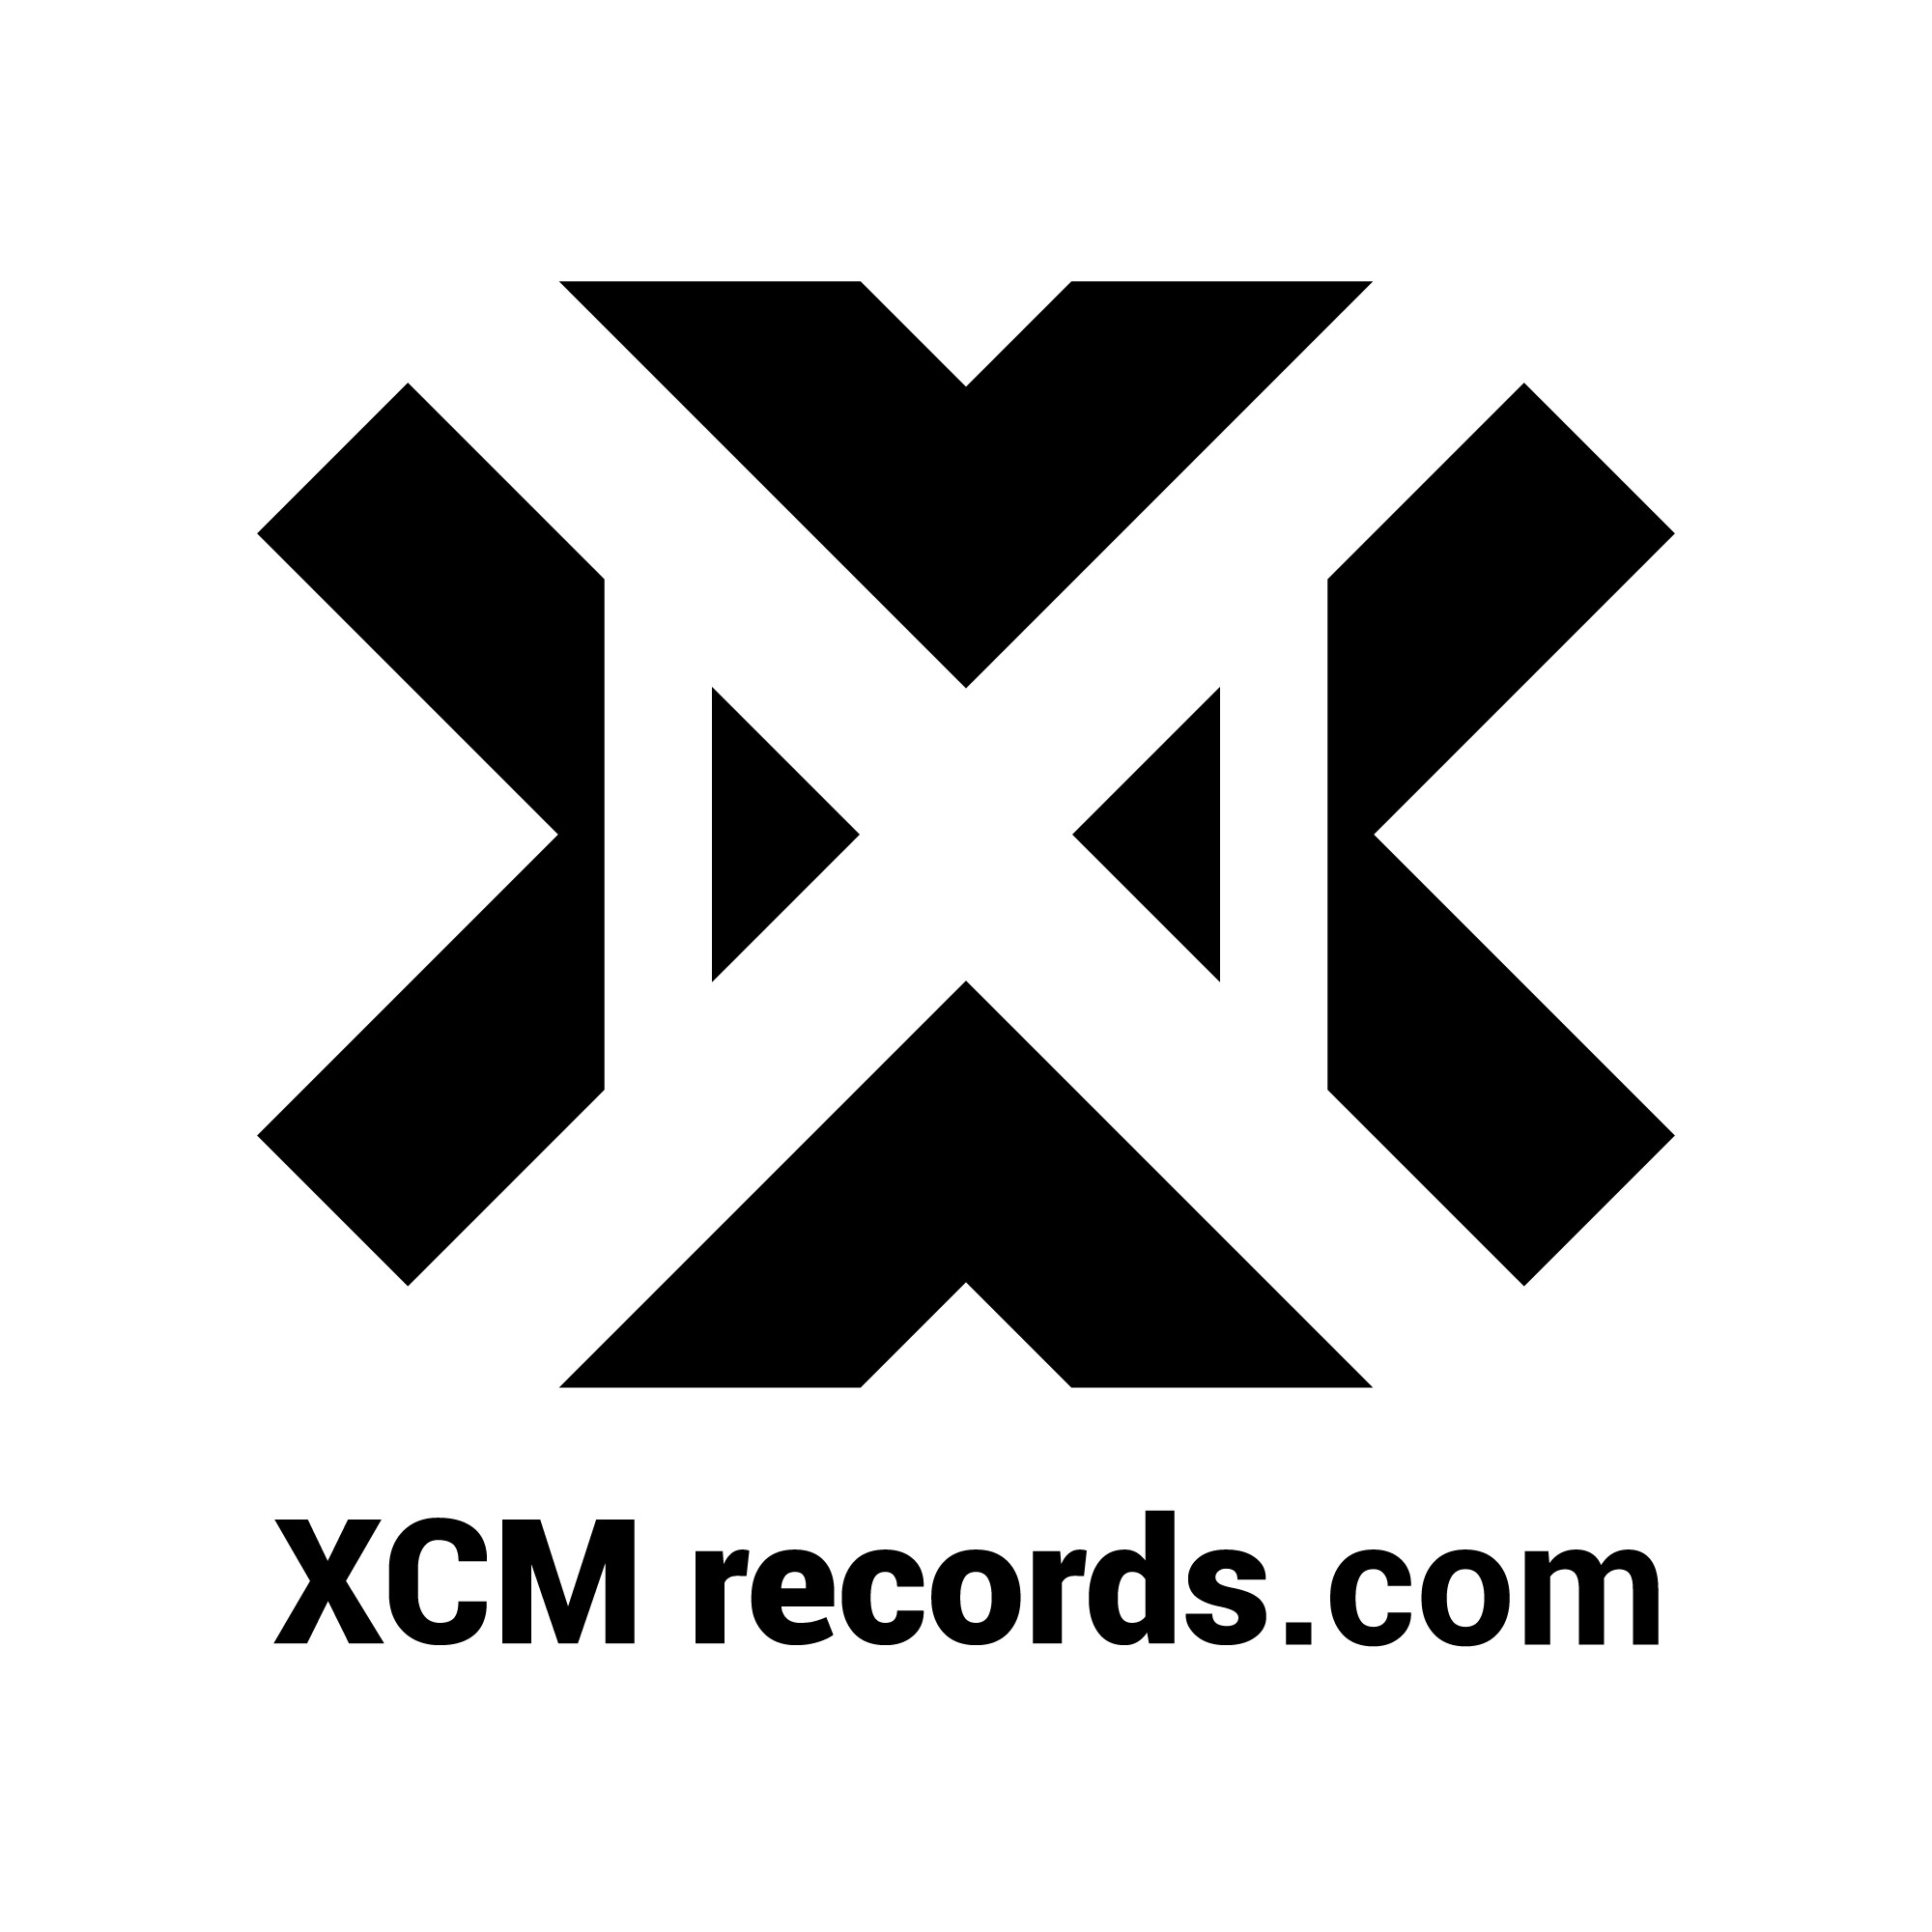 XCM records